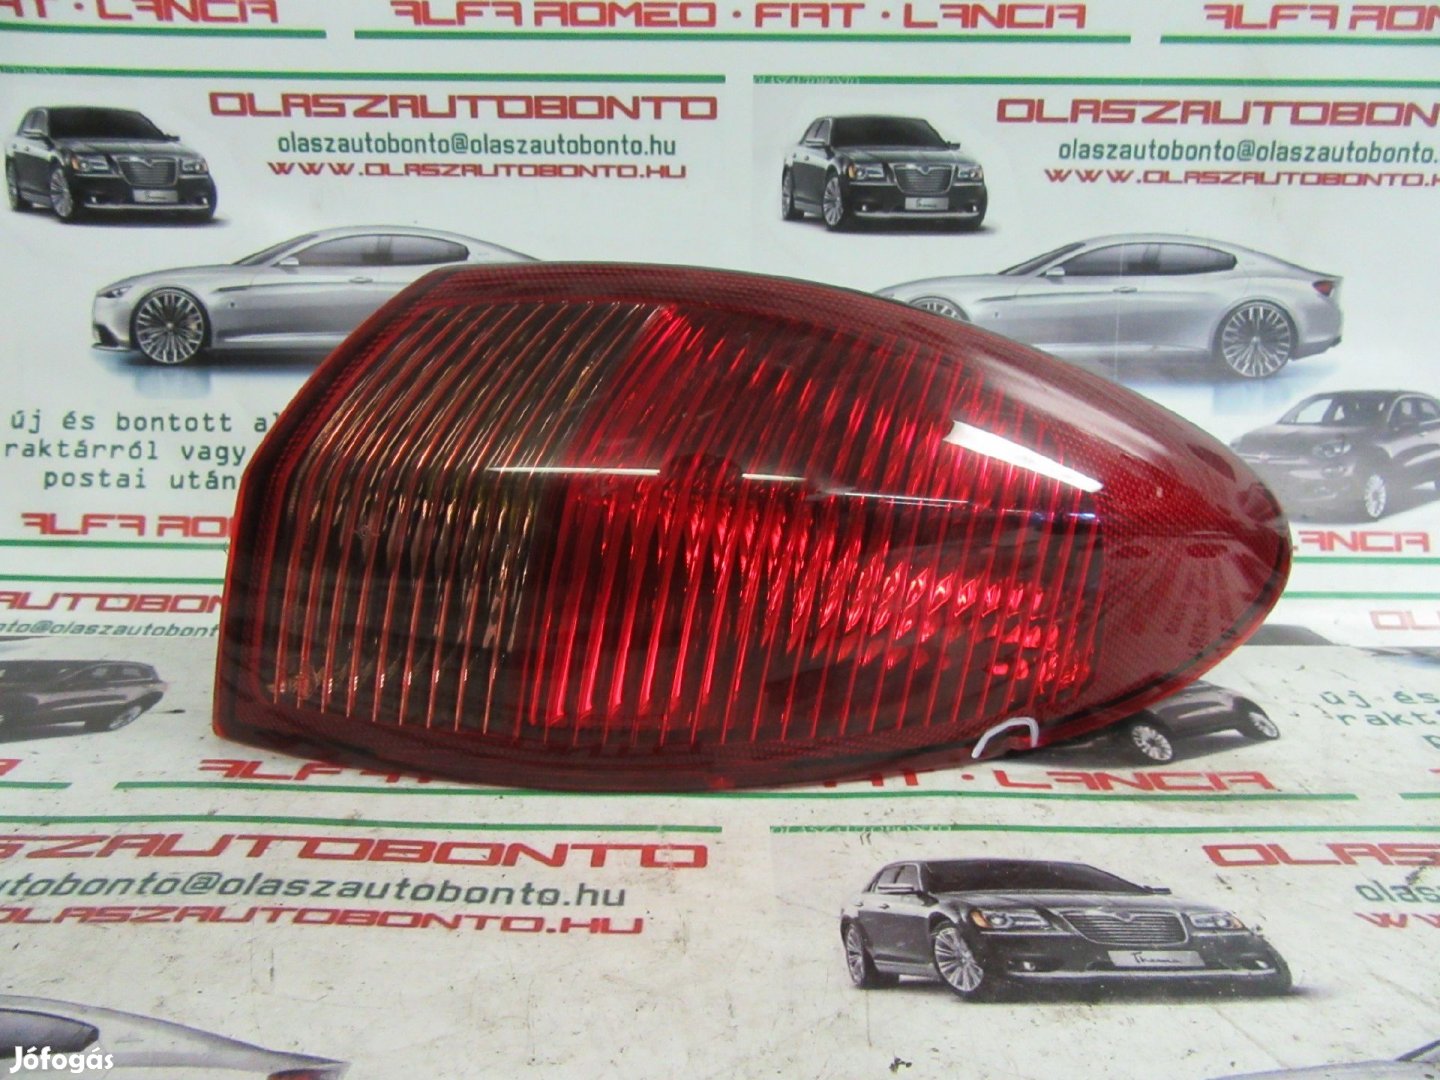 Alfa Romeo 147 46556347 számú,jobb hátsó külső lámpa a képen látható